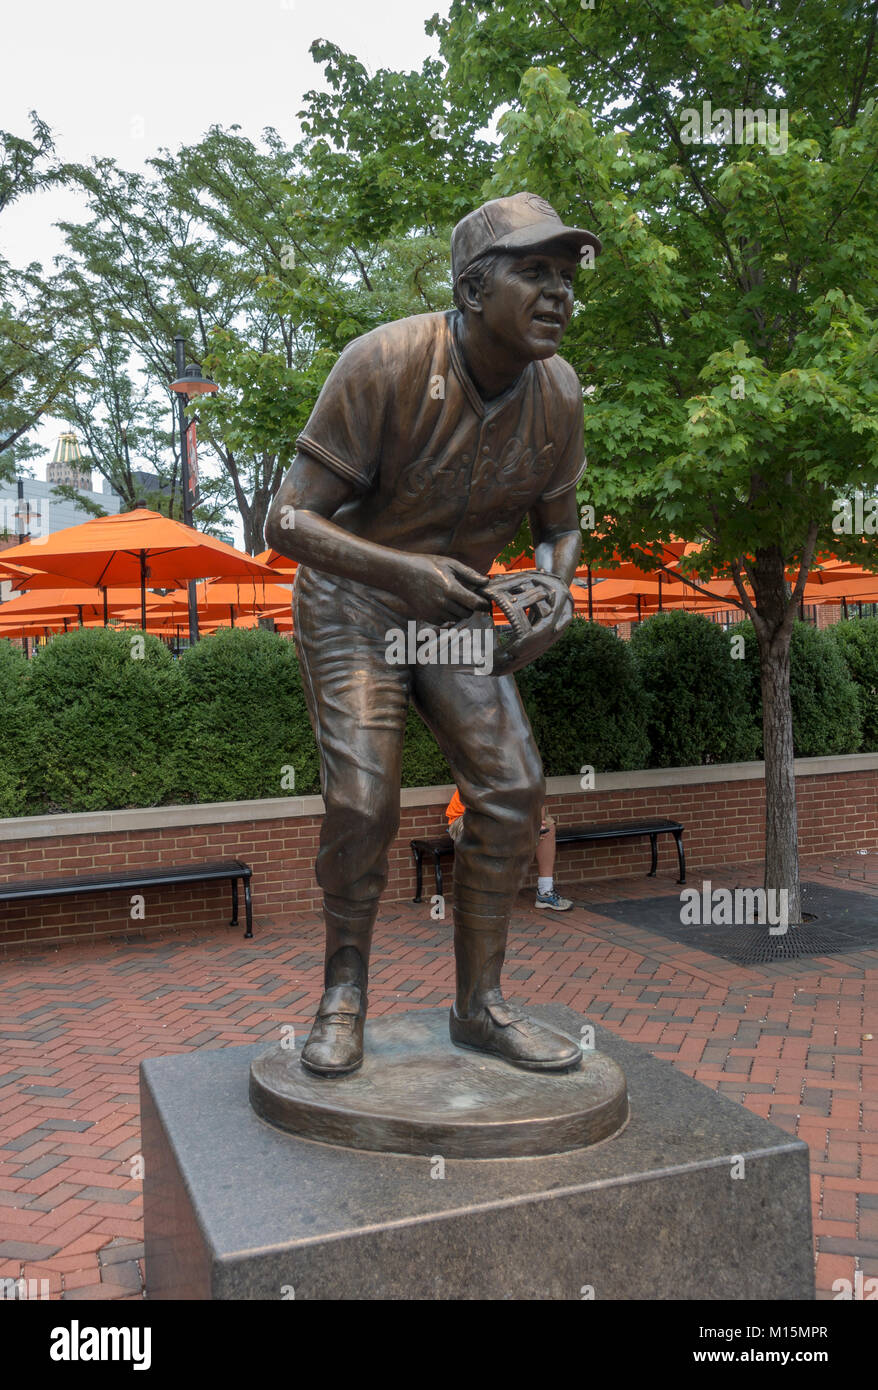 Miembro del Salón de la Fama de la escultura de Brooks Robinson en el Oriole Park en Camden Yards, el hogar del equipo de MLB Orioles de Baltimore, Baltimore, Maryland, EE.UU. Foto de stock